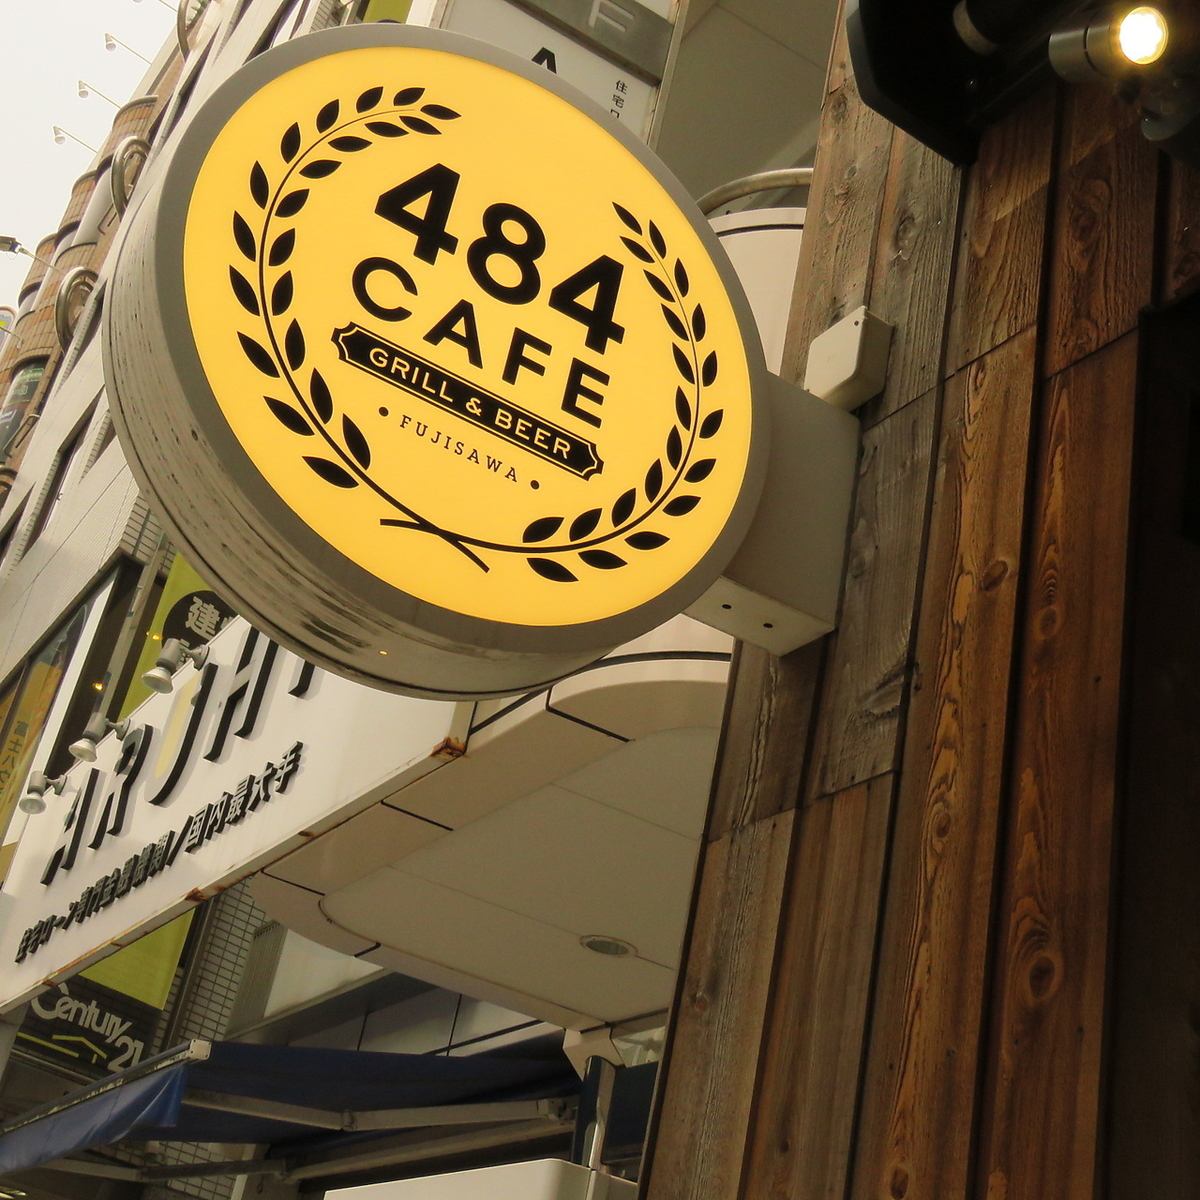 歡迎來到484cafe，在這裡你可以享受白天和晚上兩種方式♪